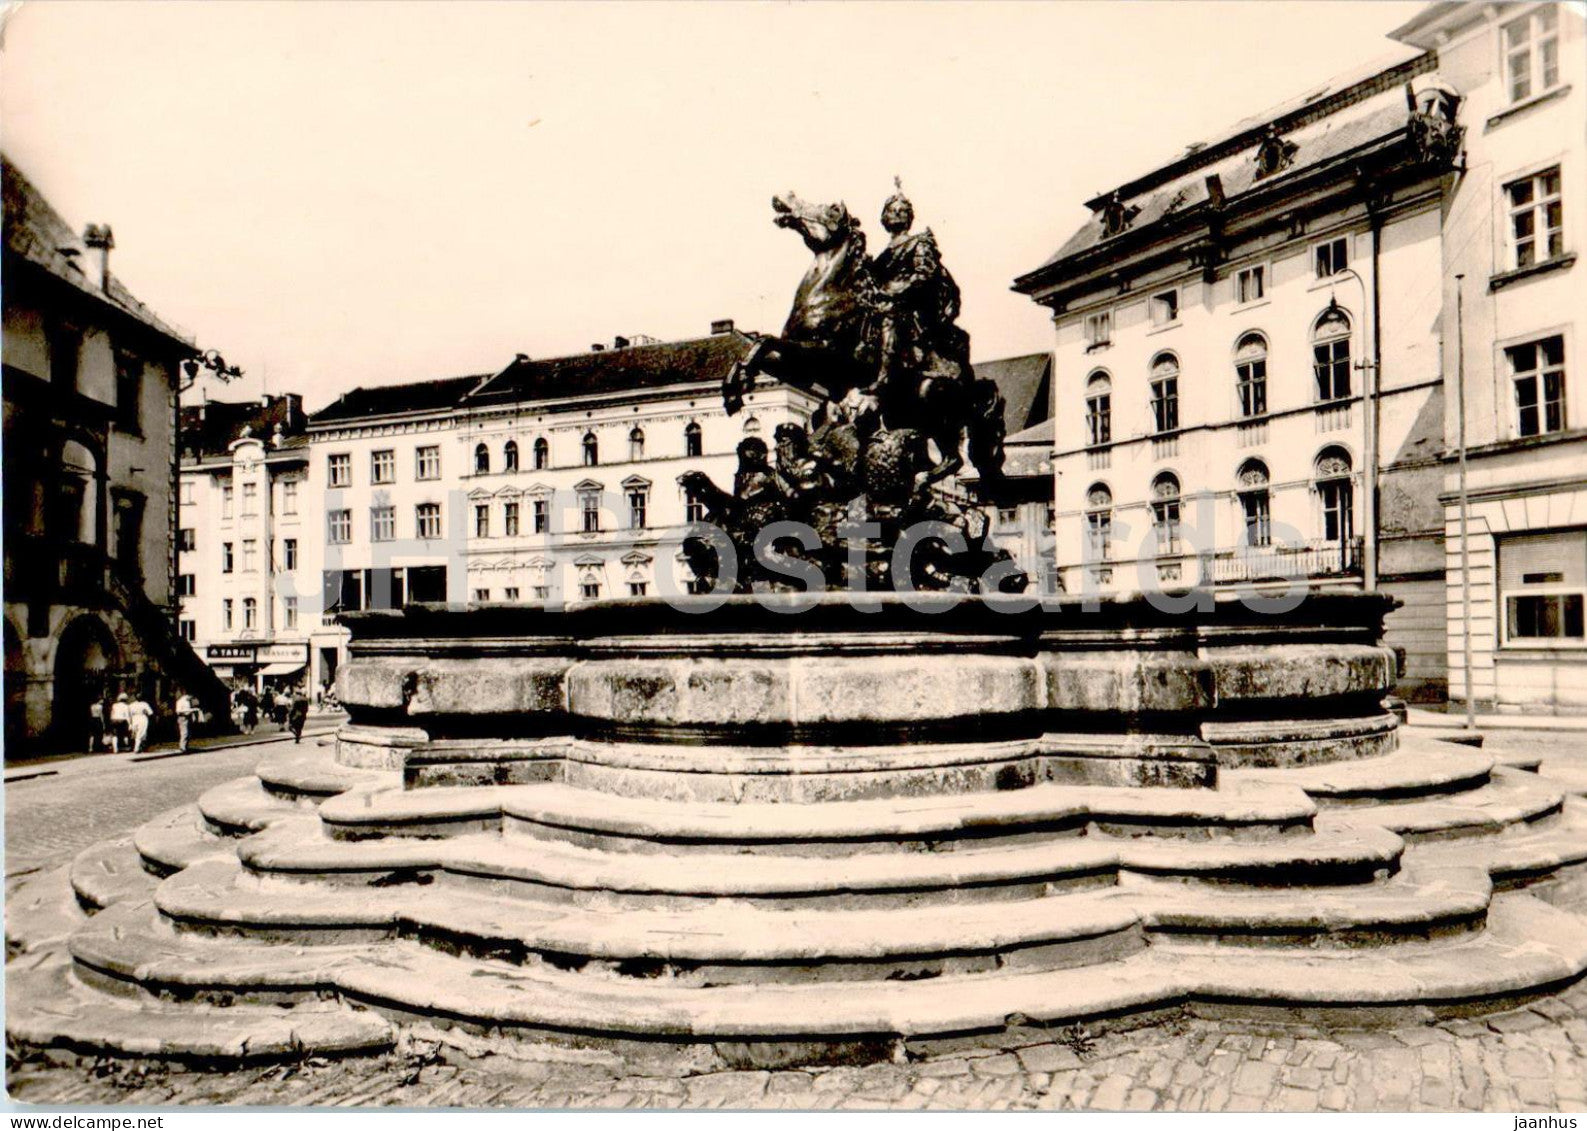 Olomouc - Cesarova kasna - sculpture - monument - Czech Repubic - Czechoslovakia - unused - JH Postcards